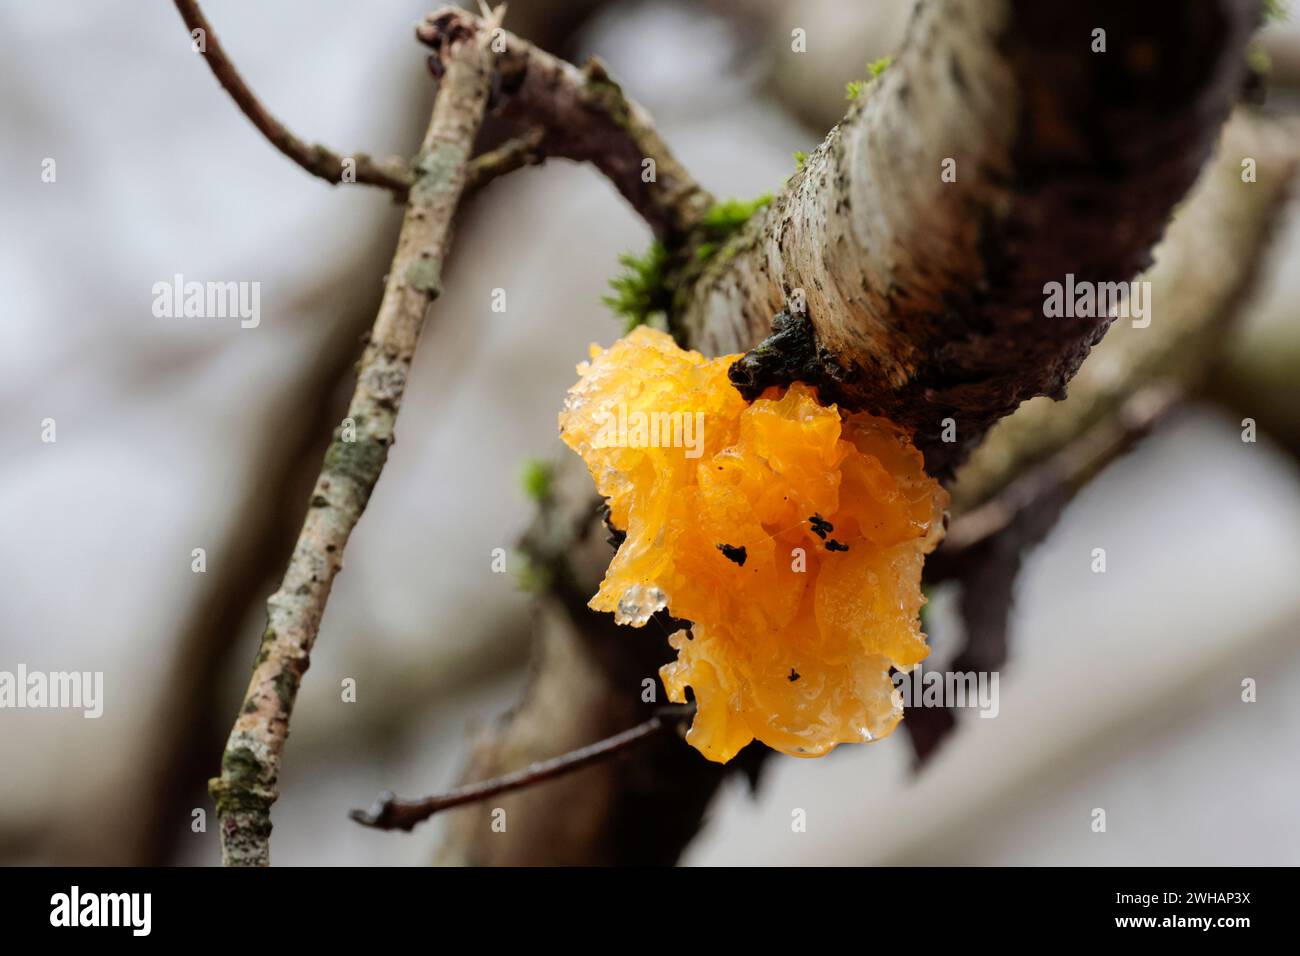 Tremella mesenterica gialla al cervello, arancio giallo brillante, morbido, lucido, piegato irregolarmente, frutta gelatinosa stagione invernale Regno Unito sulla parte inferiore del ramo Foto Stock